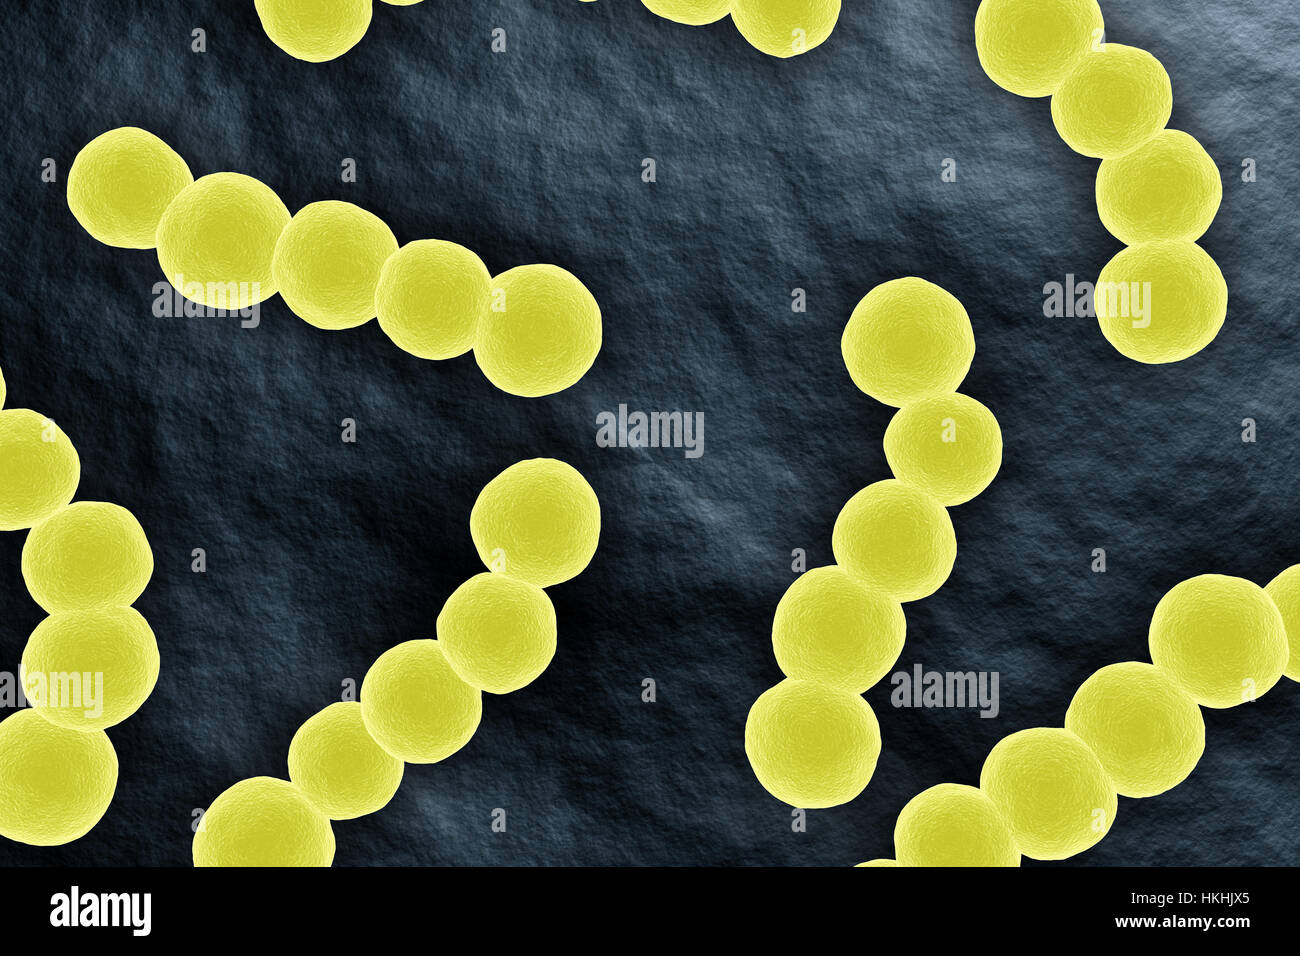 Bactérie Streptococcus vue microscopique sur l'illustration de surface Banque D'Images